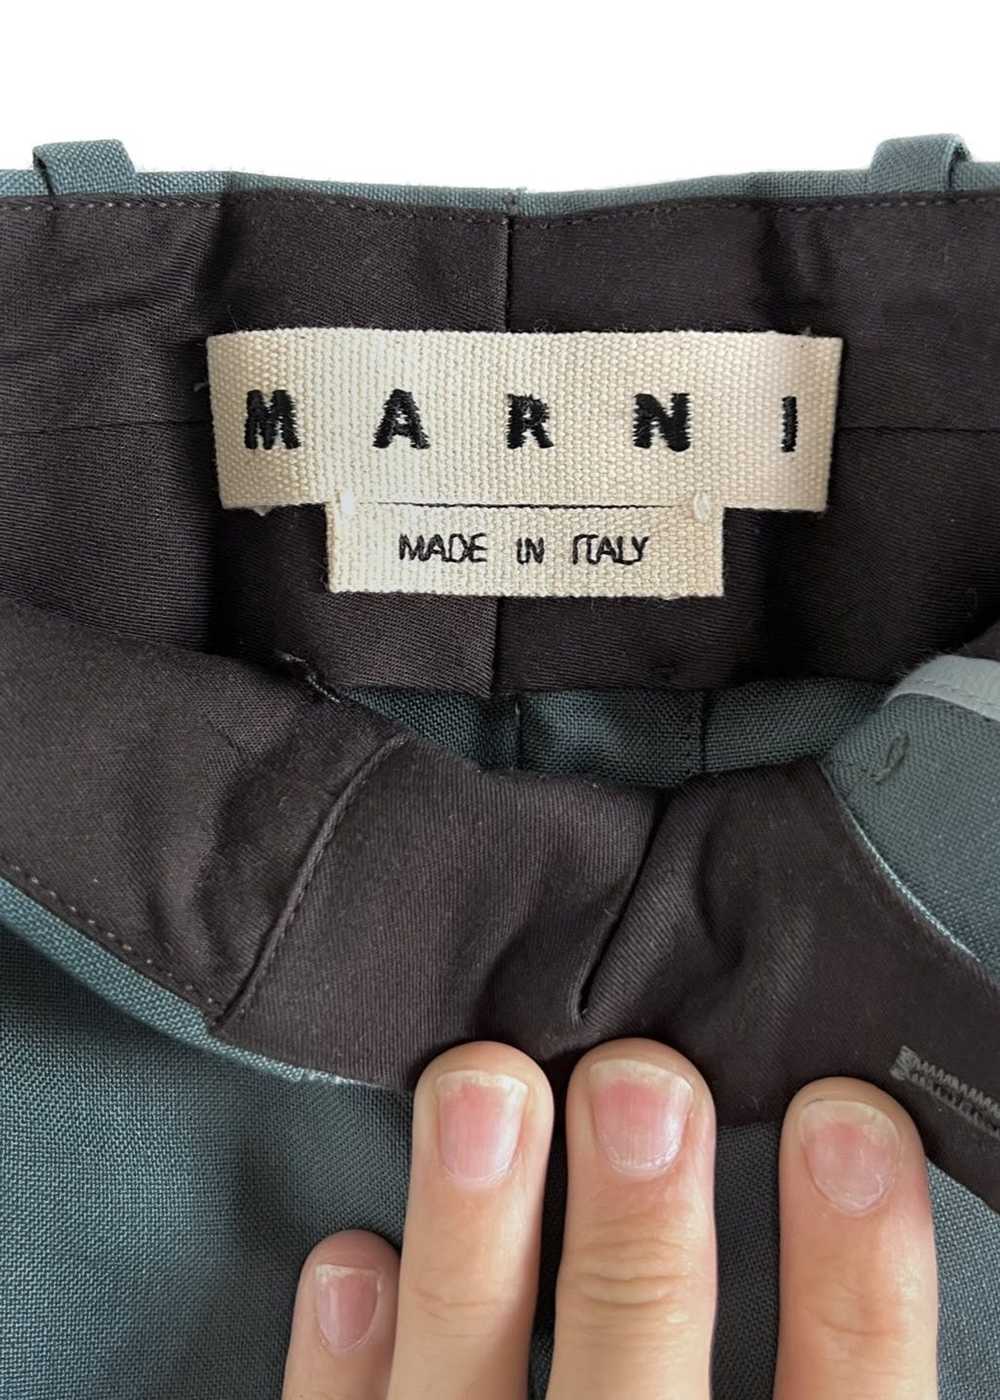 Marni Marni Grey Green Light Wool Trousers - image 4